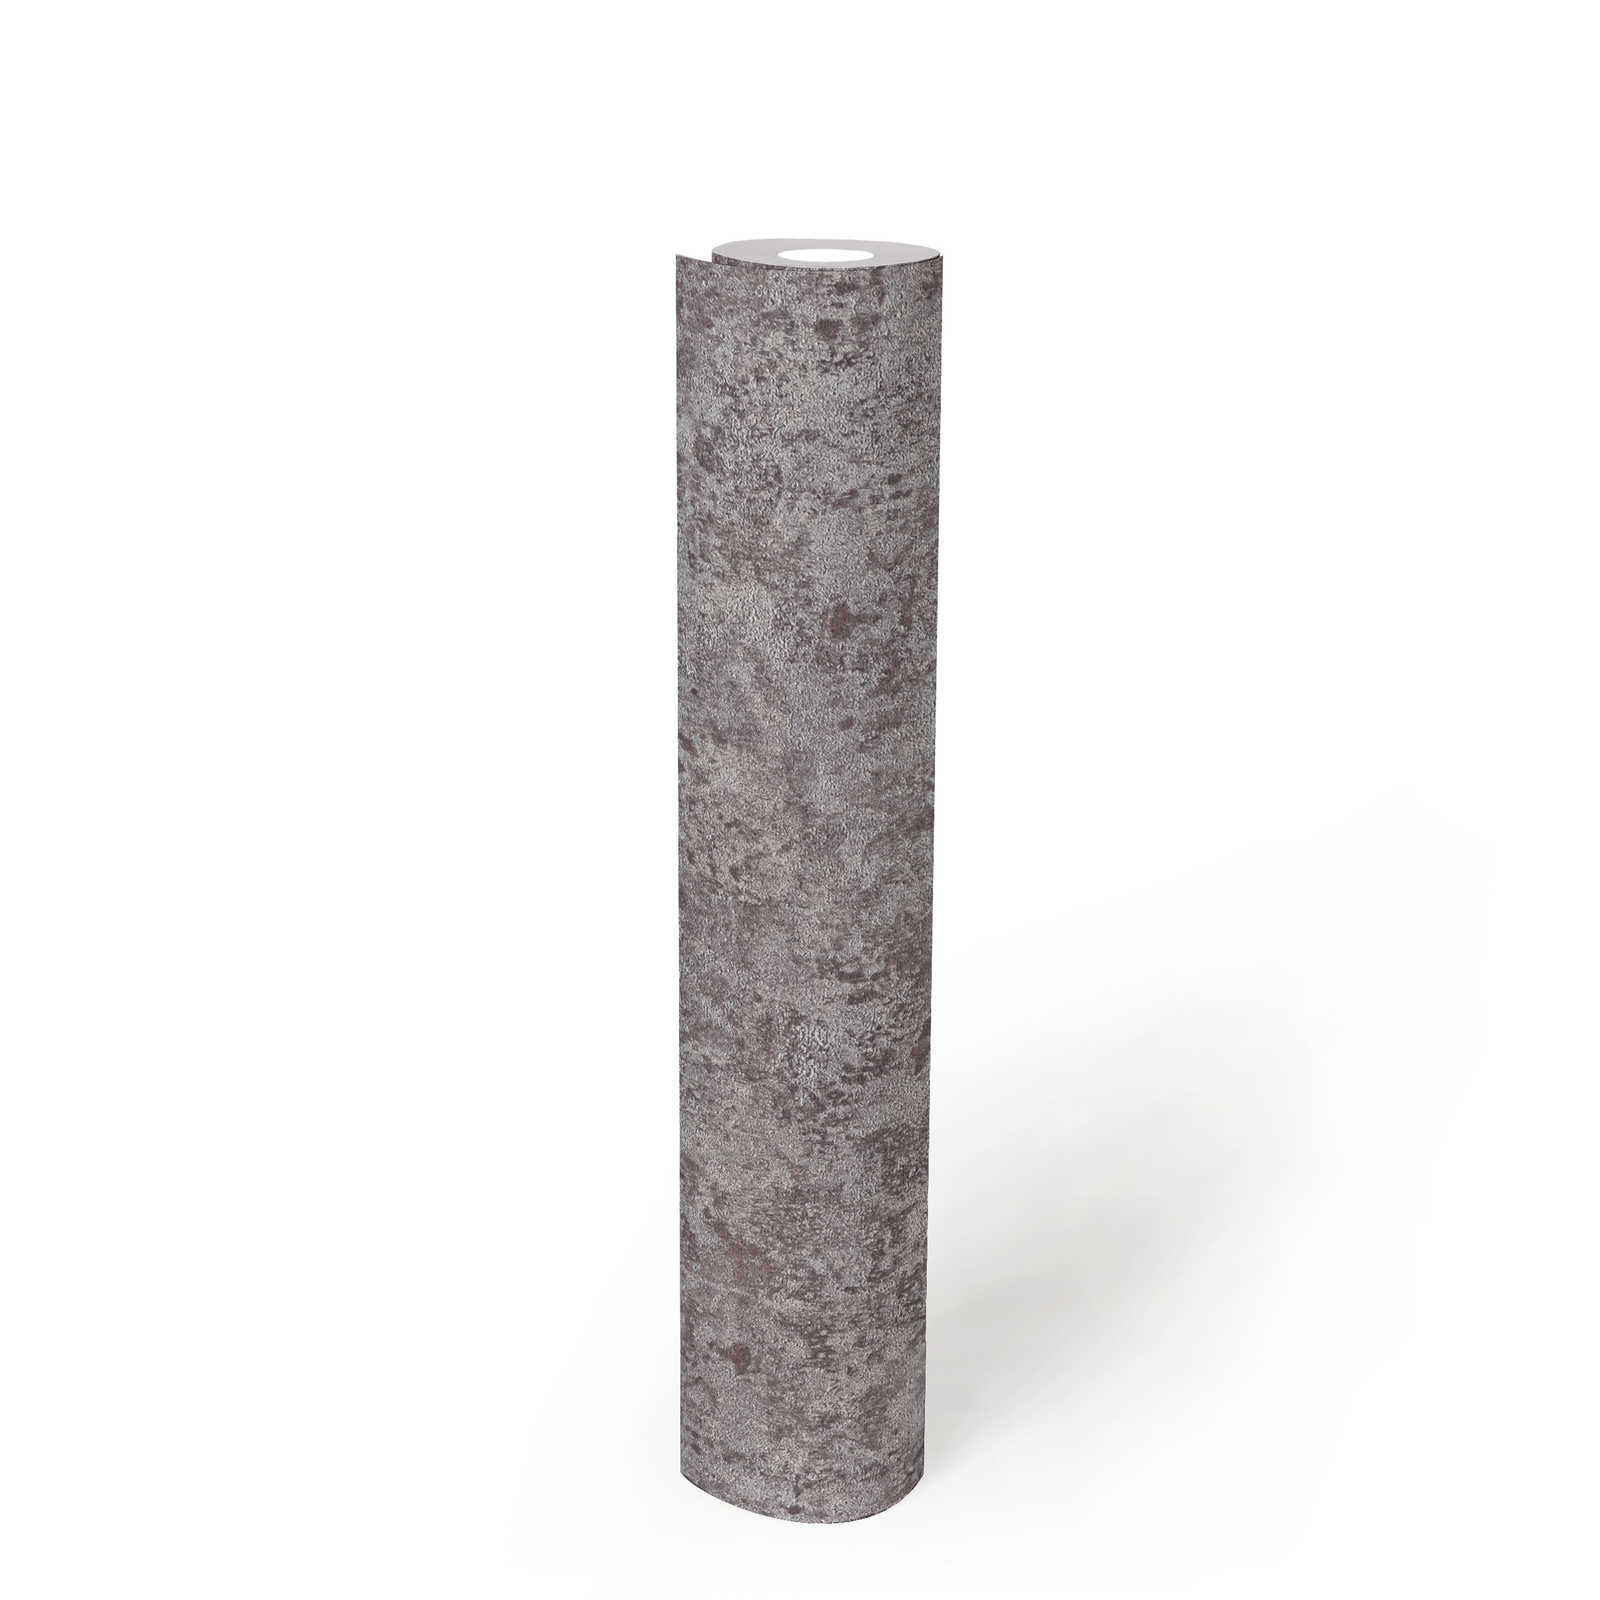             Vliestapete mit glänzenden Metalliceffekt – Grau, Silber, Braun
        